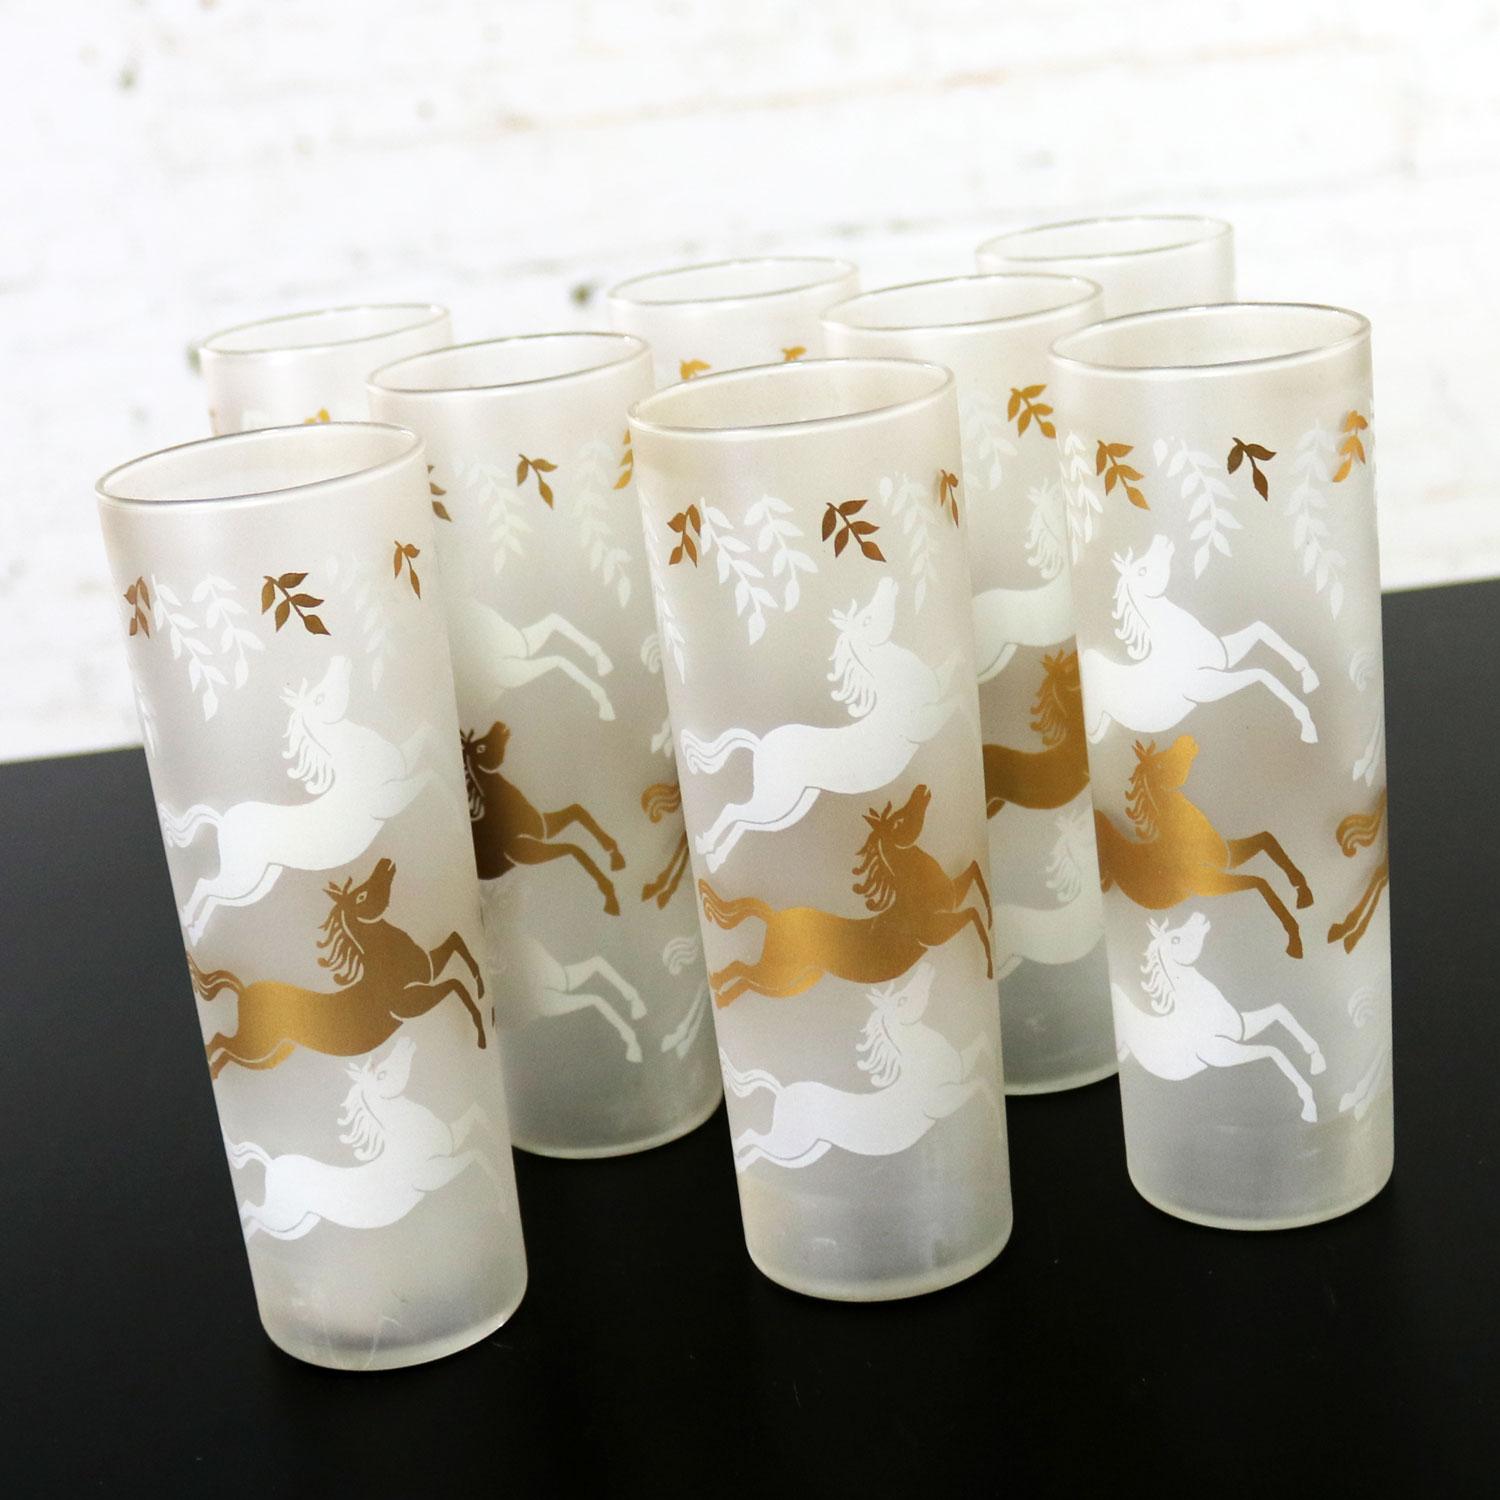 Incroyable ensemble de 8 verres à cocktail de style Mid-Century Modern de Libbey de la collection Cavalcade. Elles sont givrées et présentent des chevaux galopants blancs et or dans leur boîte d'origine. Tous les verres highball sont en merveilleux